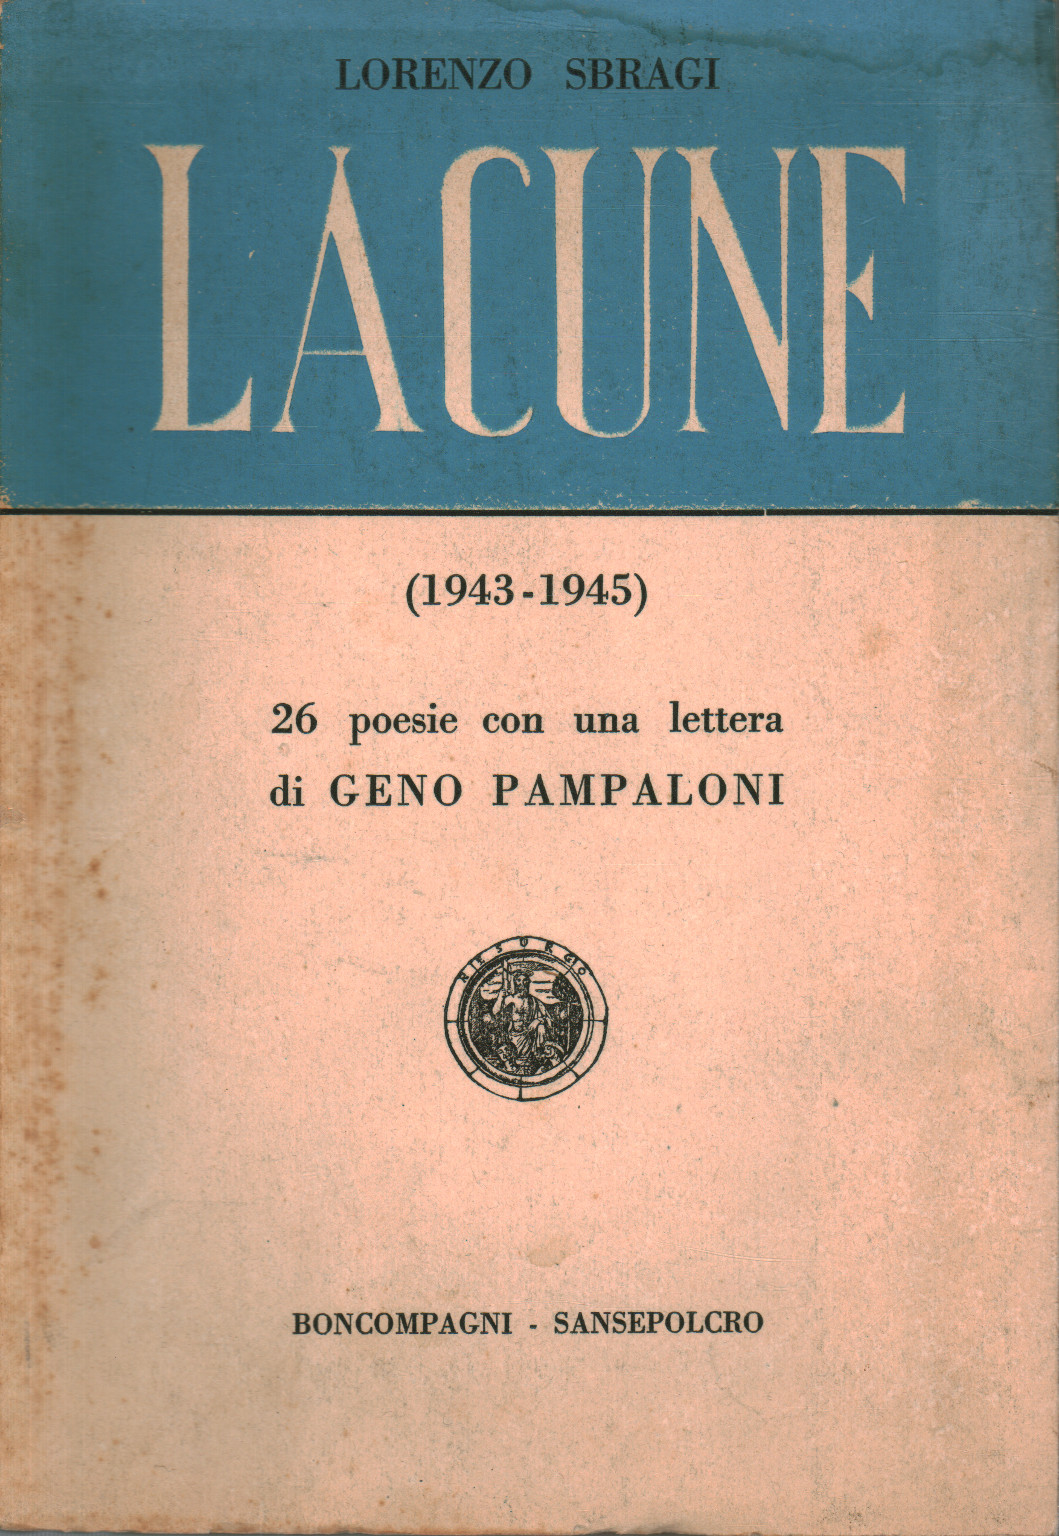 Lagunas (1943-1945), Lorenzo Sbragi